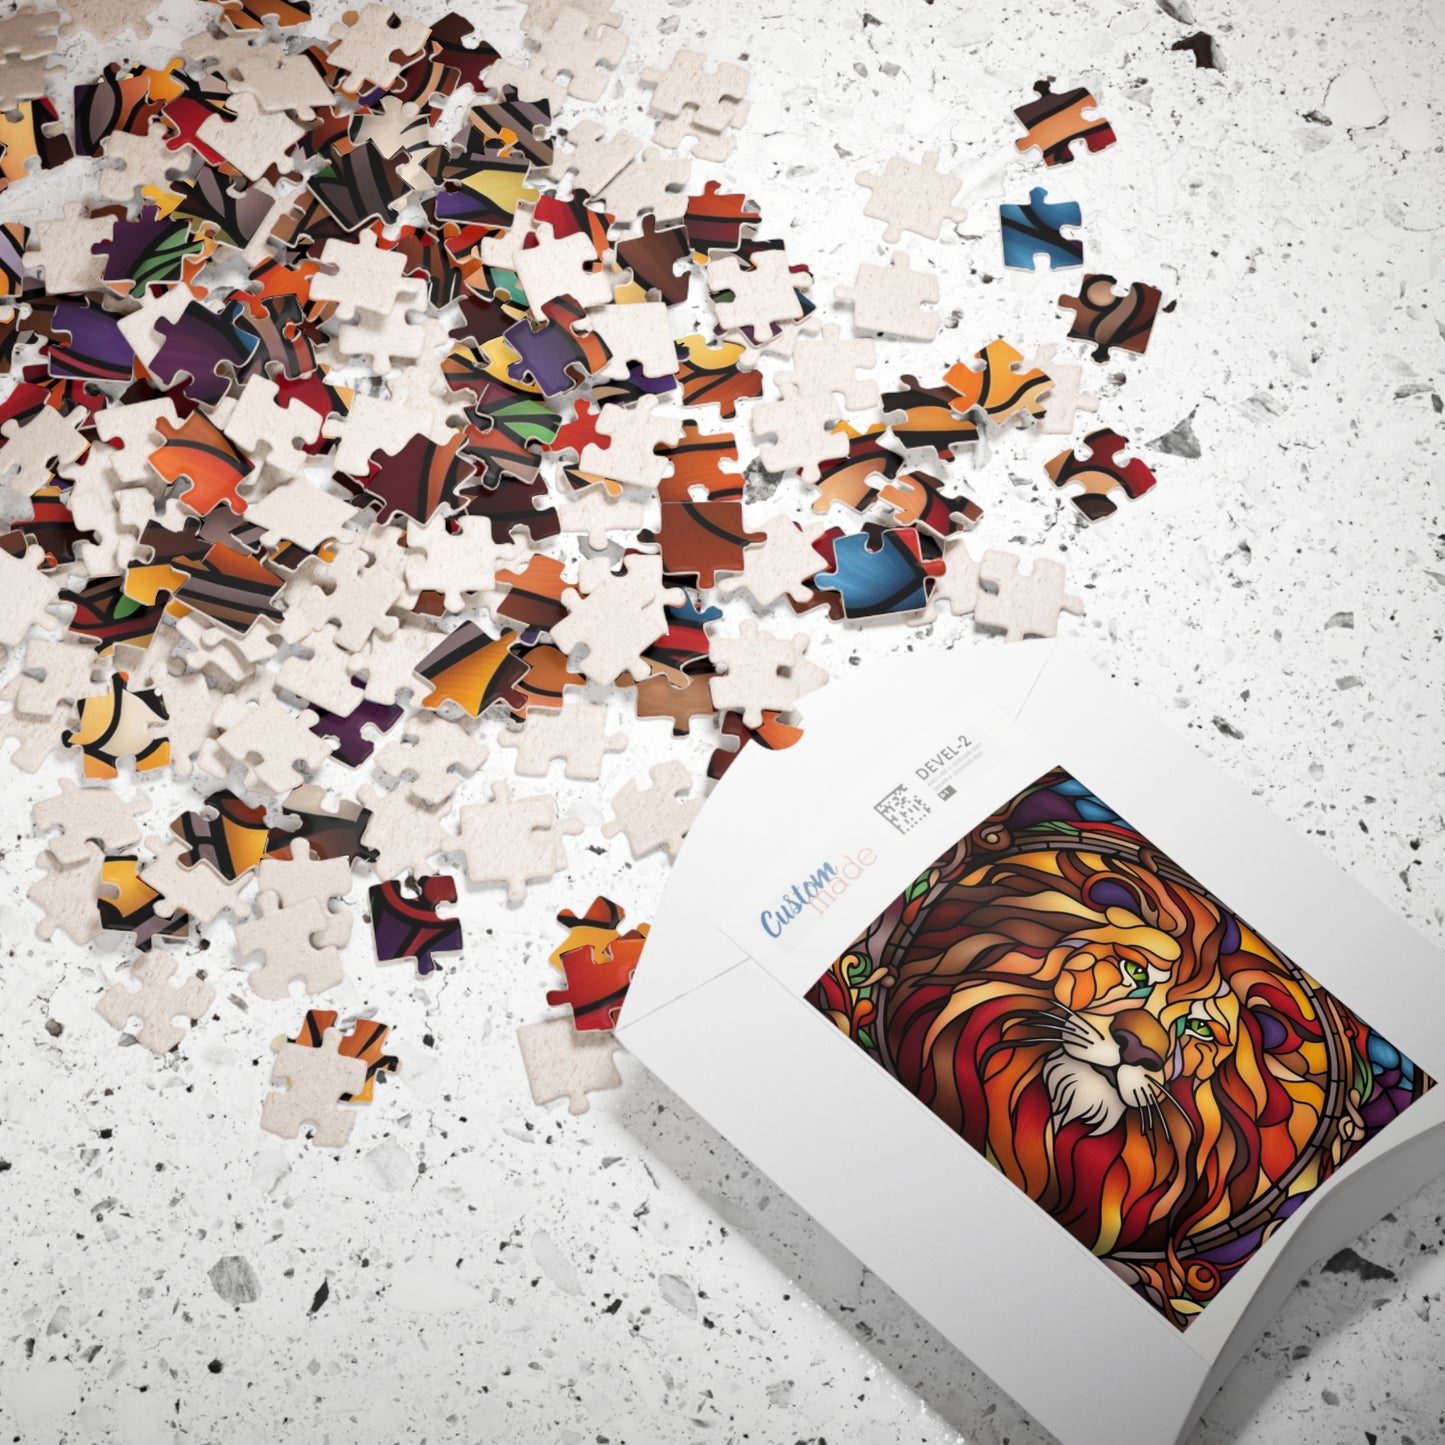 Lion Puzzle, 110-Piece